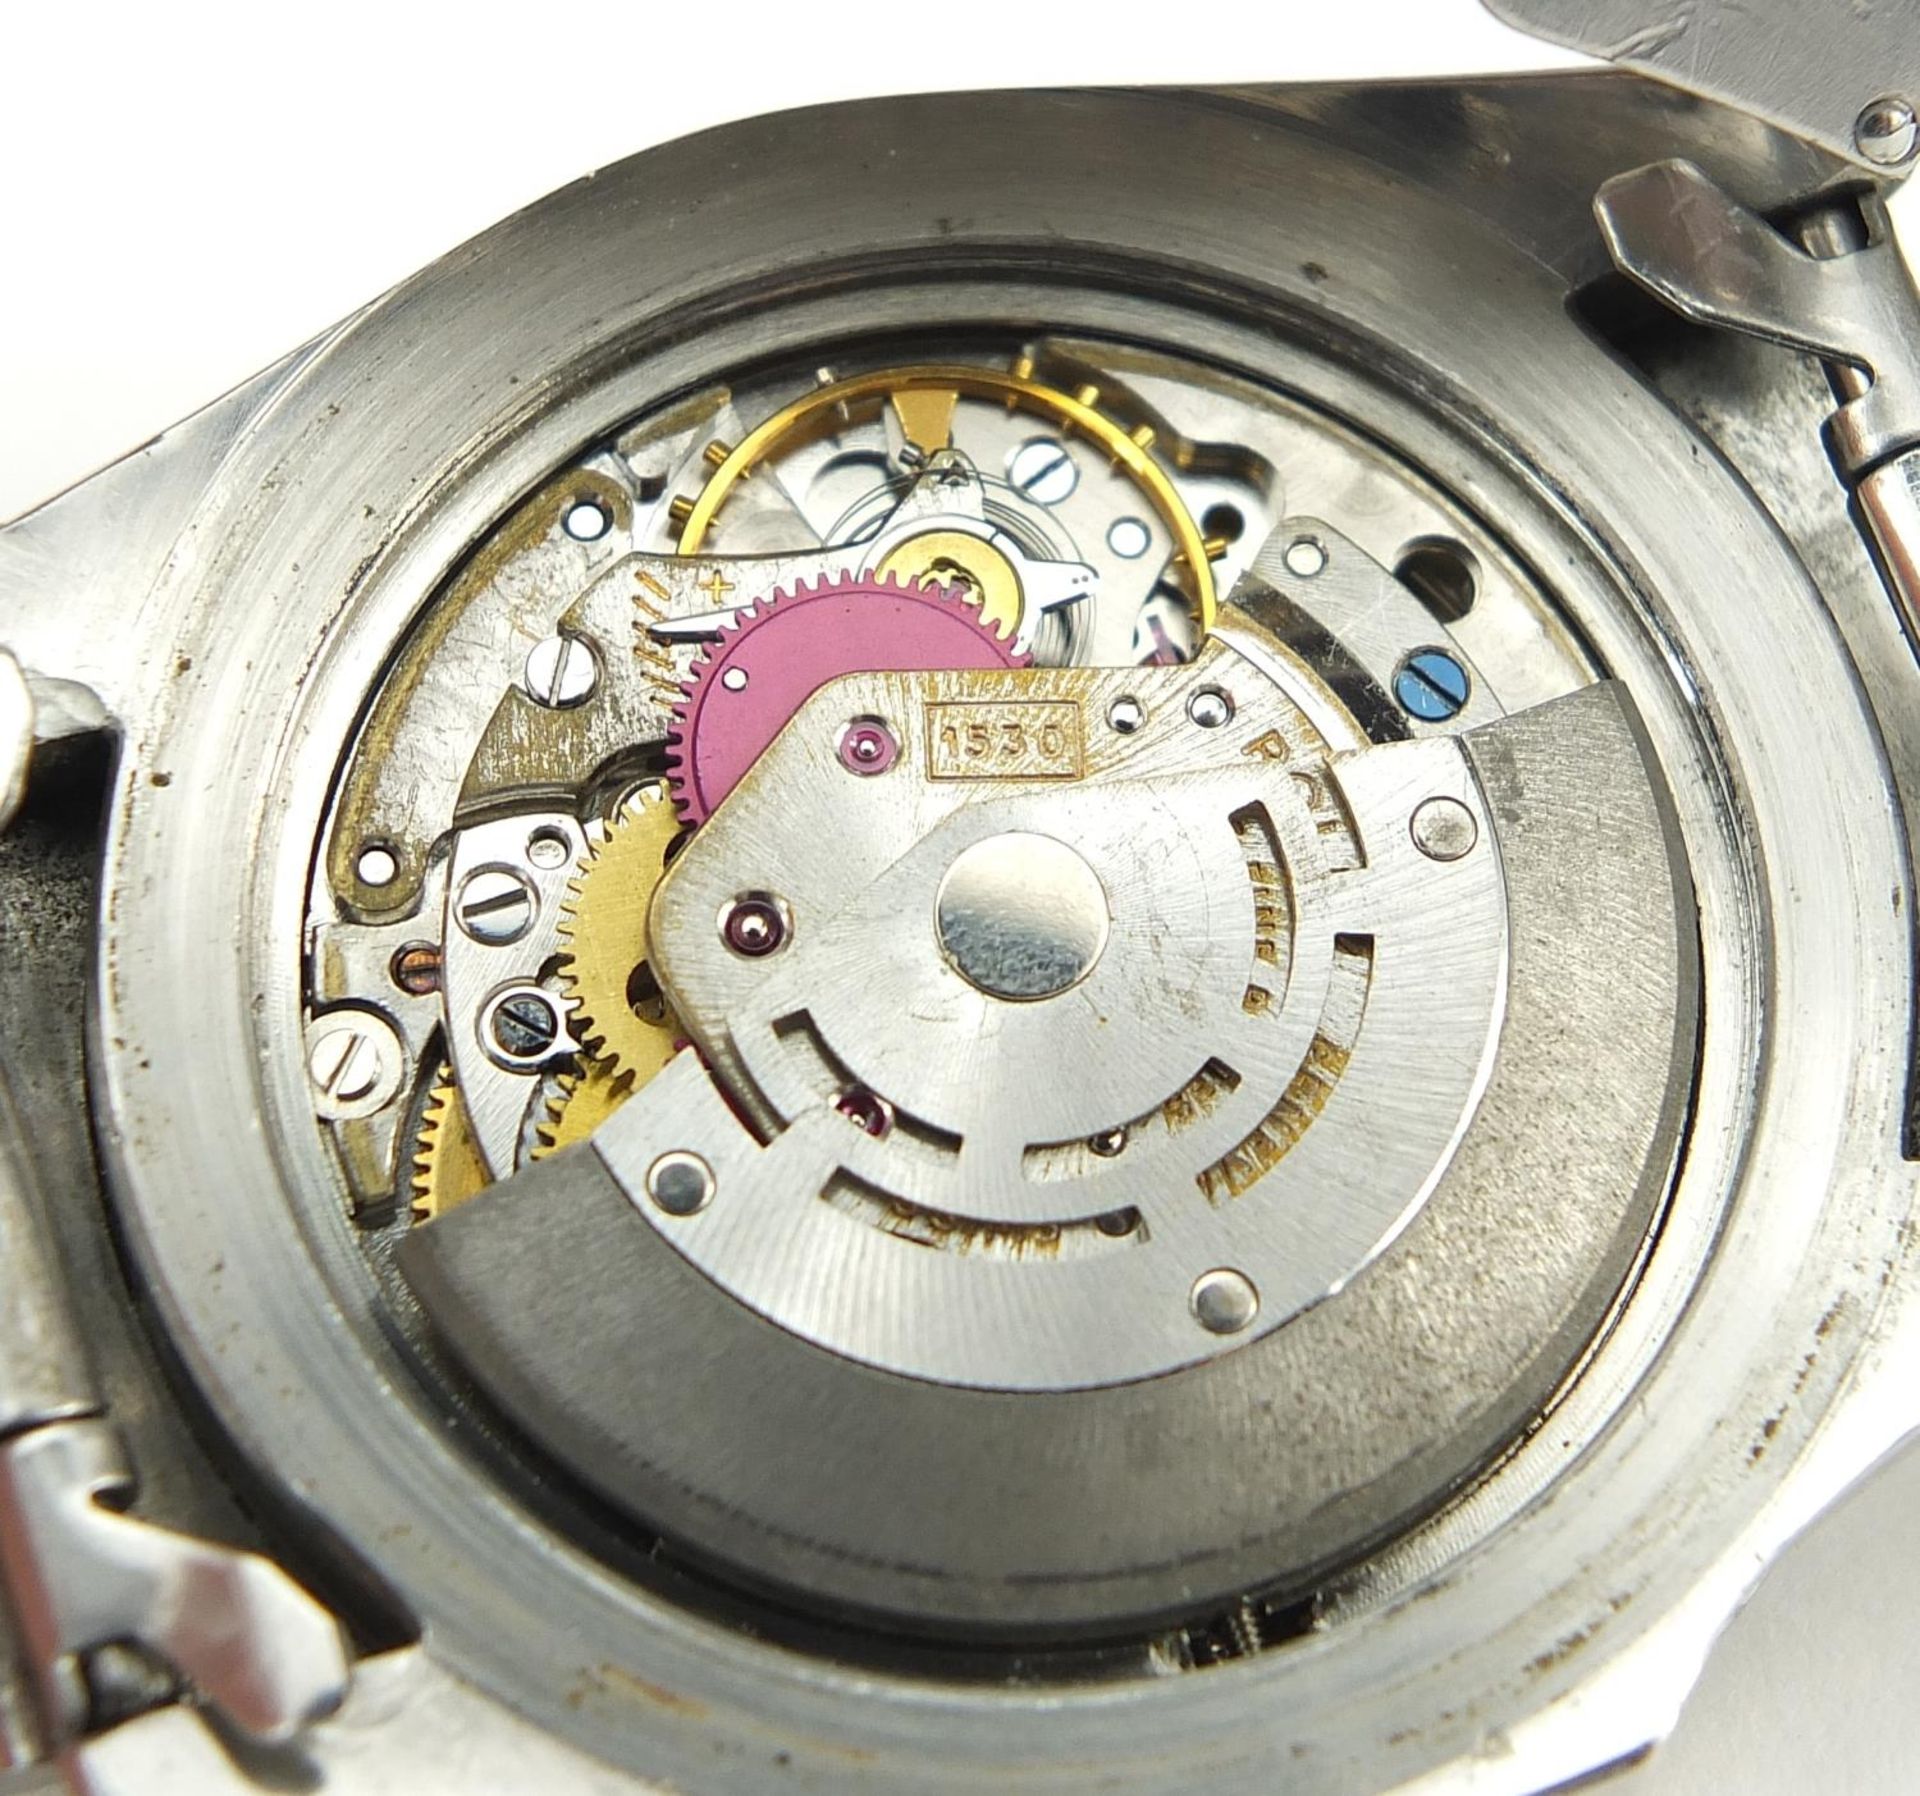 Rolex gentlemen's Submariner automatic wristwatch, ref 5513, serial number 1005684, 40mm in diameter - Bild 8 aus 9